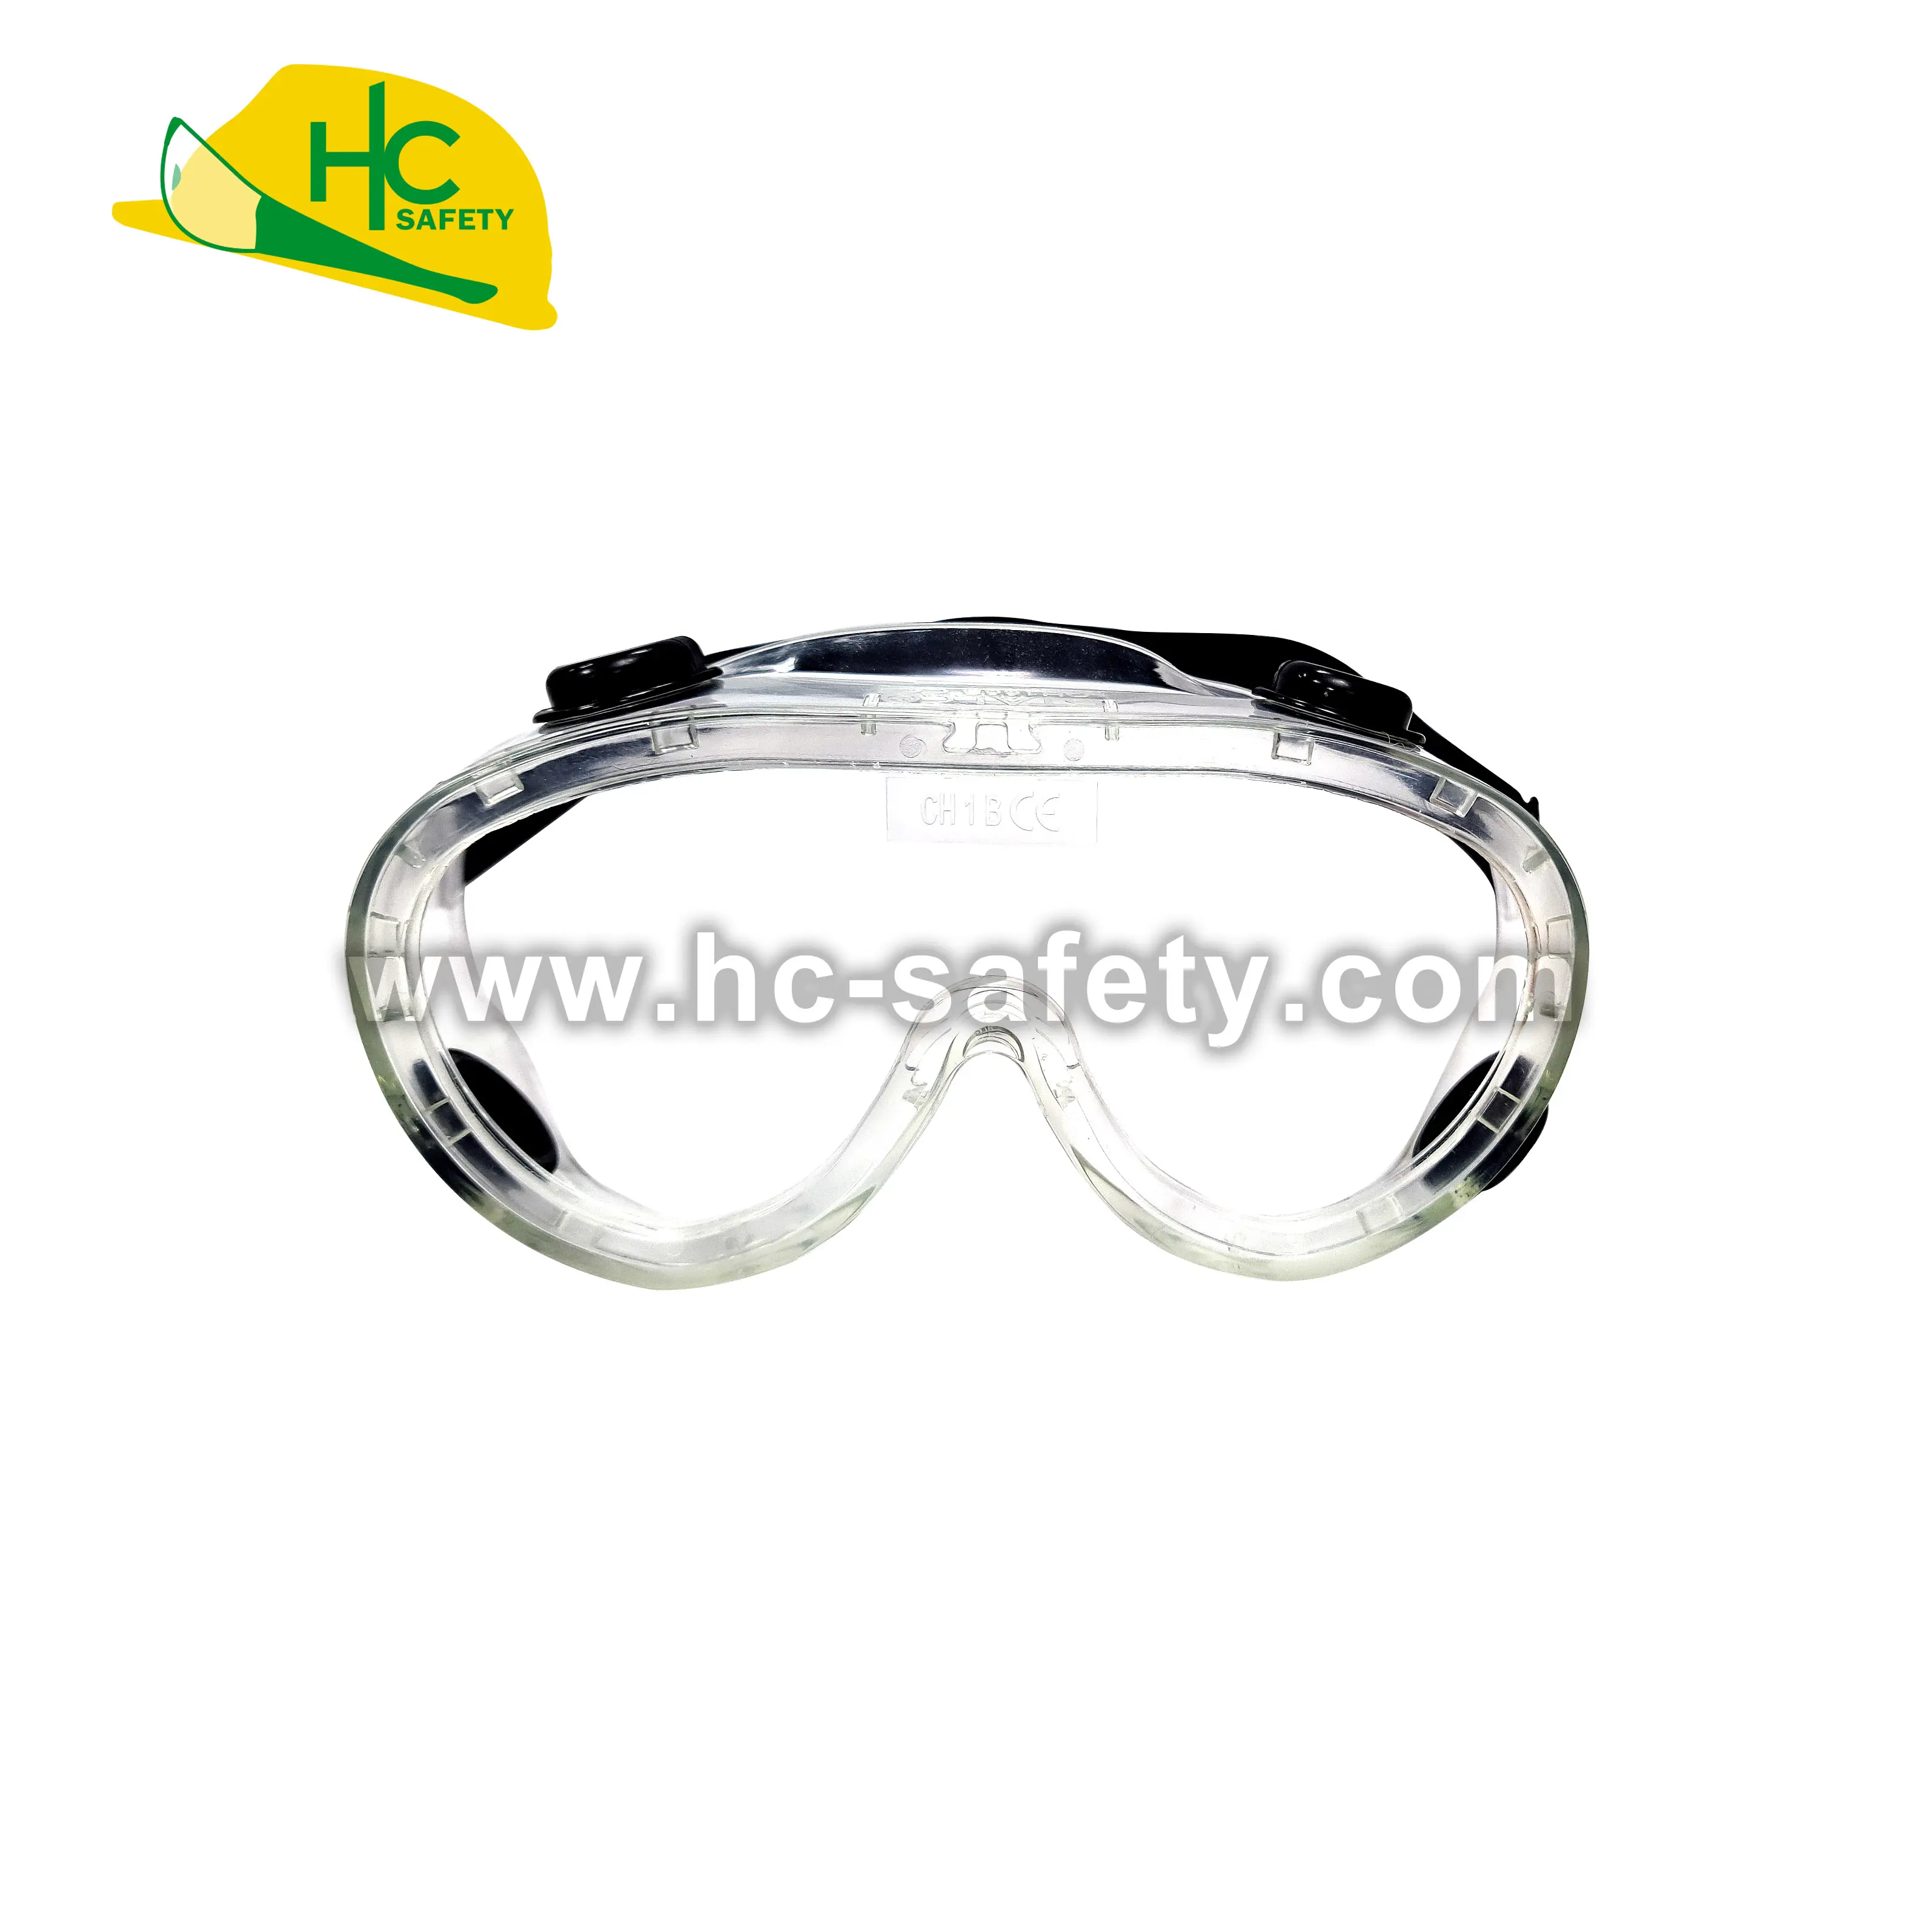 A611-2A CE ANSI proteção ocular descartável laboratório anti nevoeiro uv óculos de segurança ansi z87.1 óculos de segurança ce en166 ansi z87.1 segurança ppe